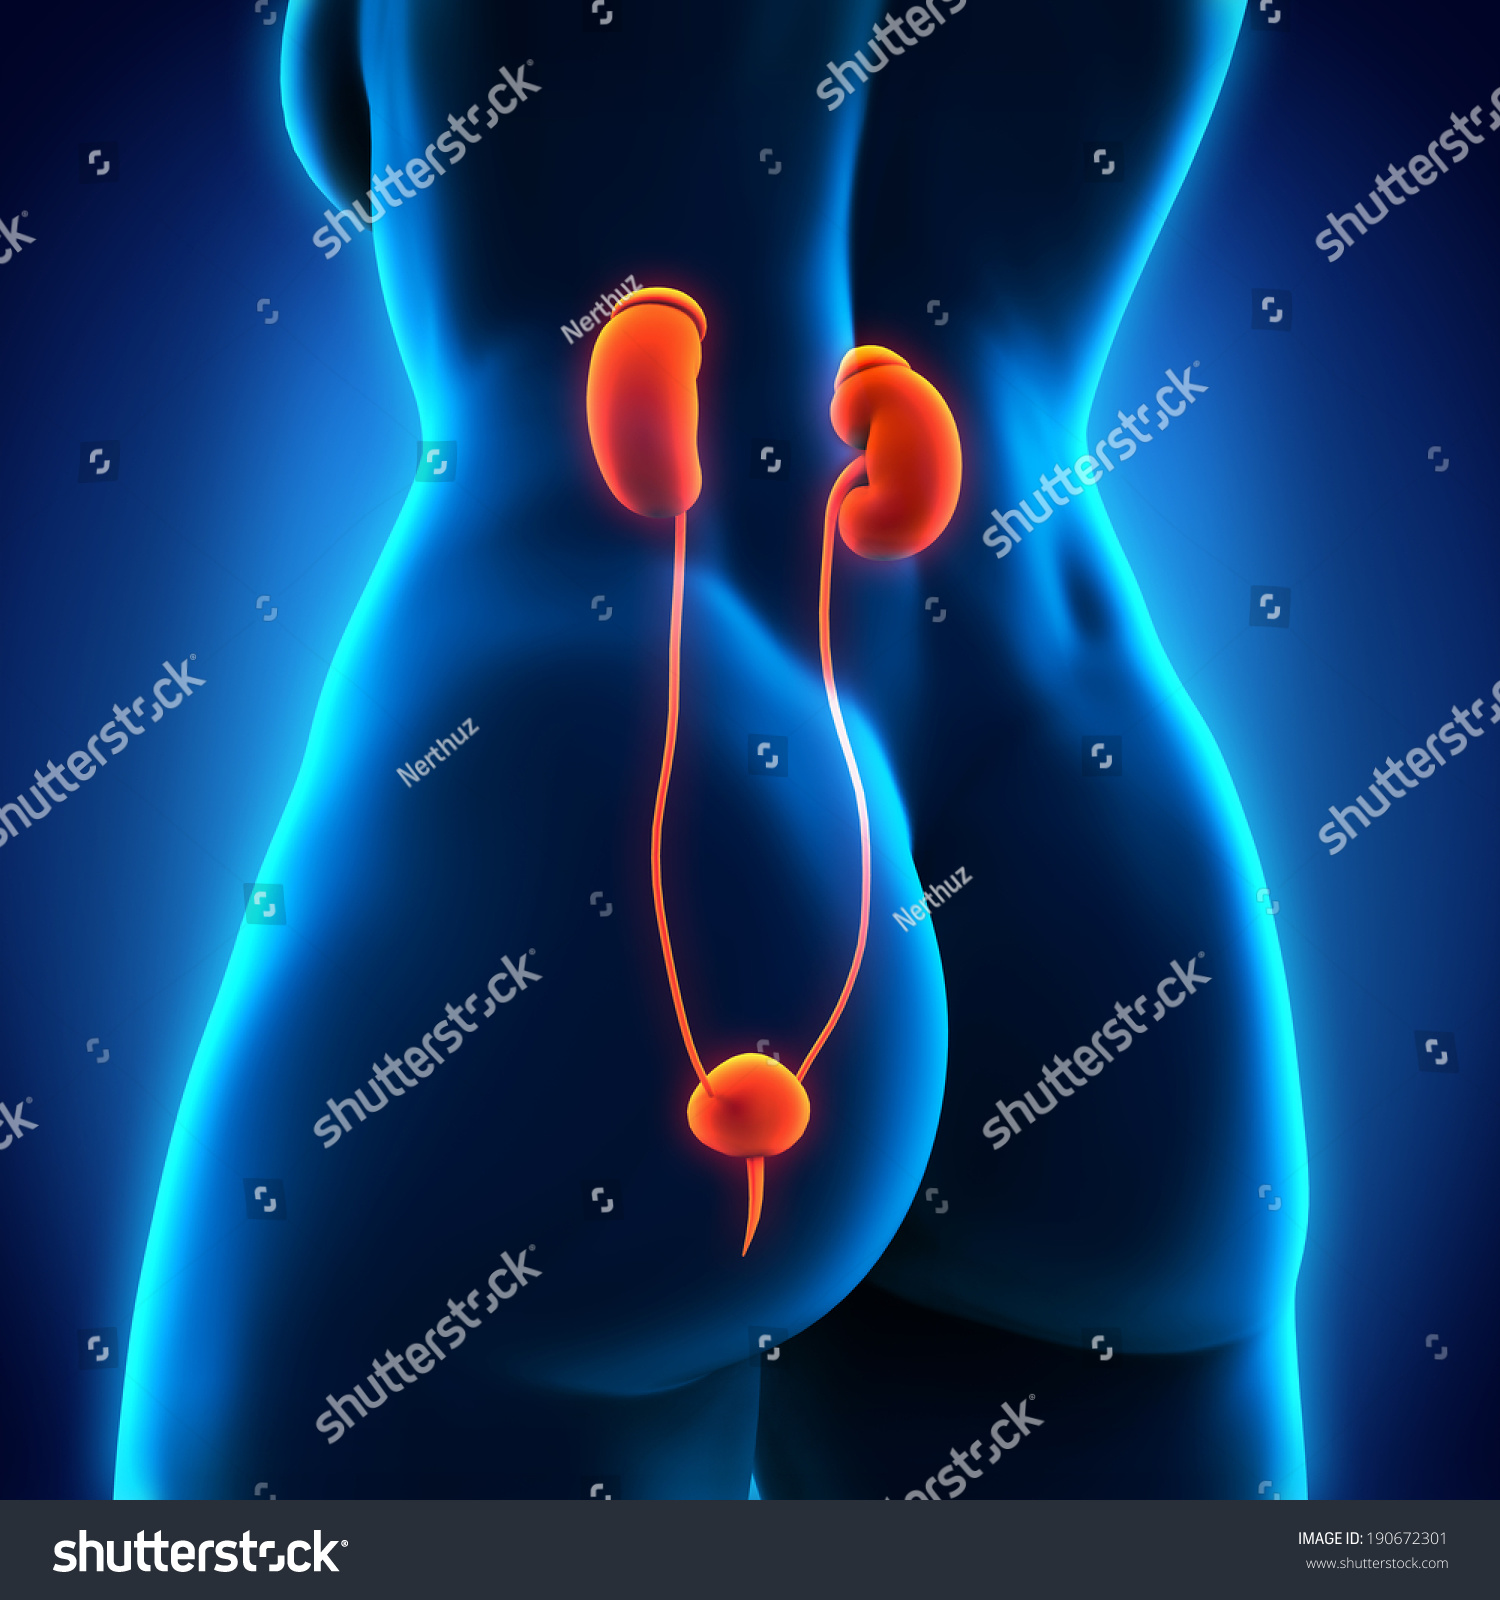 Human Female Kidney Anatomy Stock Photo 190672301 : Shutterstock